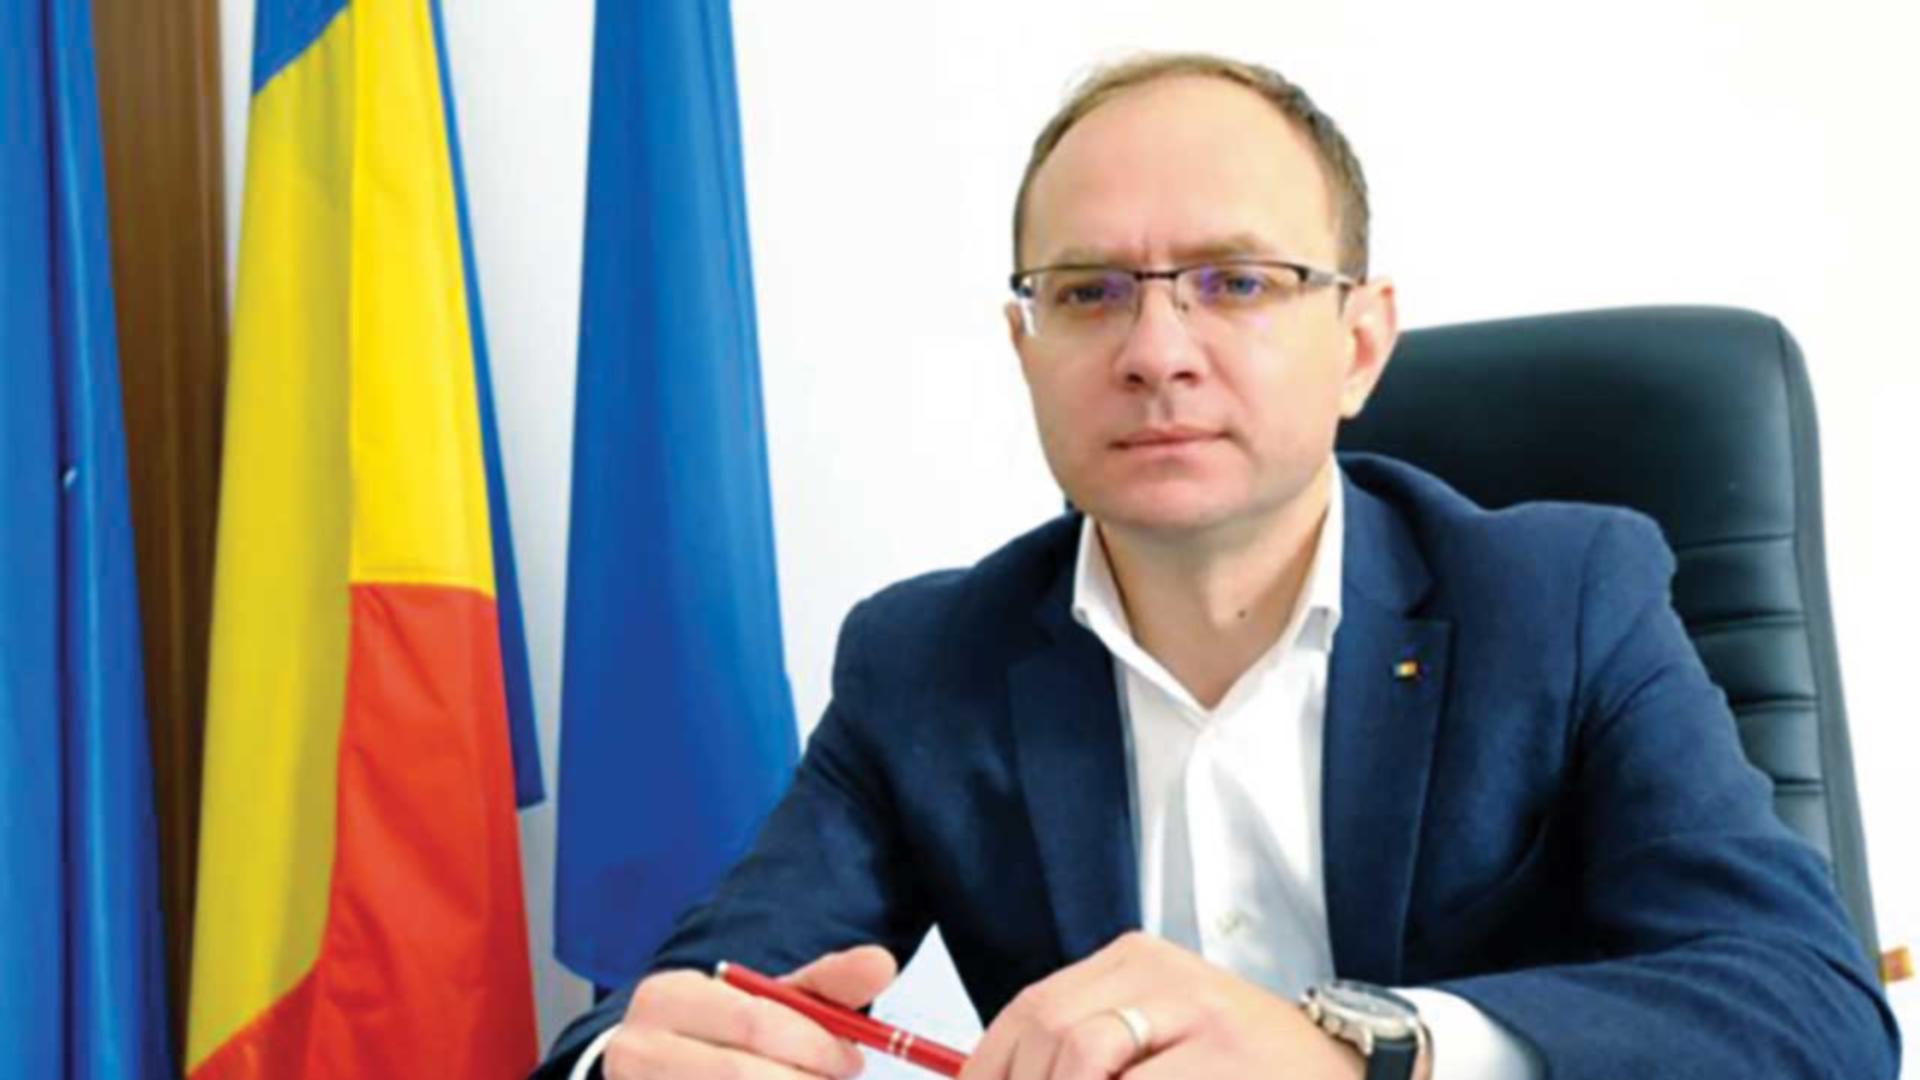 Primarul din Botoșani, plasat sub control judiciar! Andrei Cosmin este acuzat că ar fi aranjat mai multe concursuri din instituție